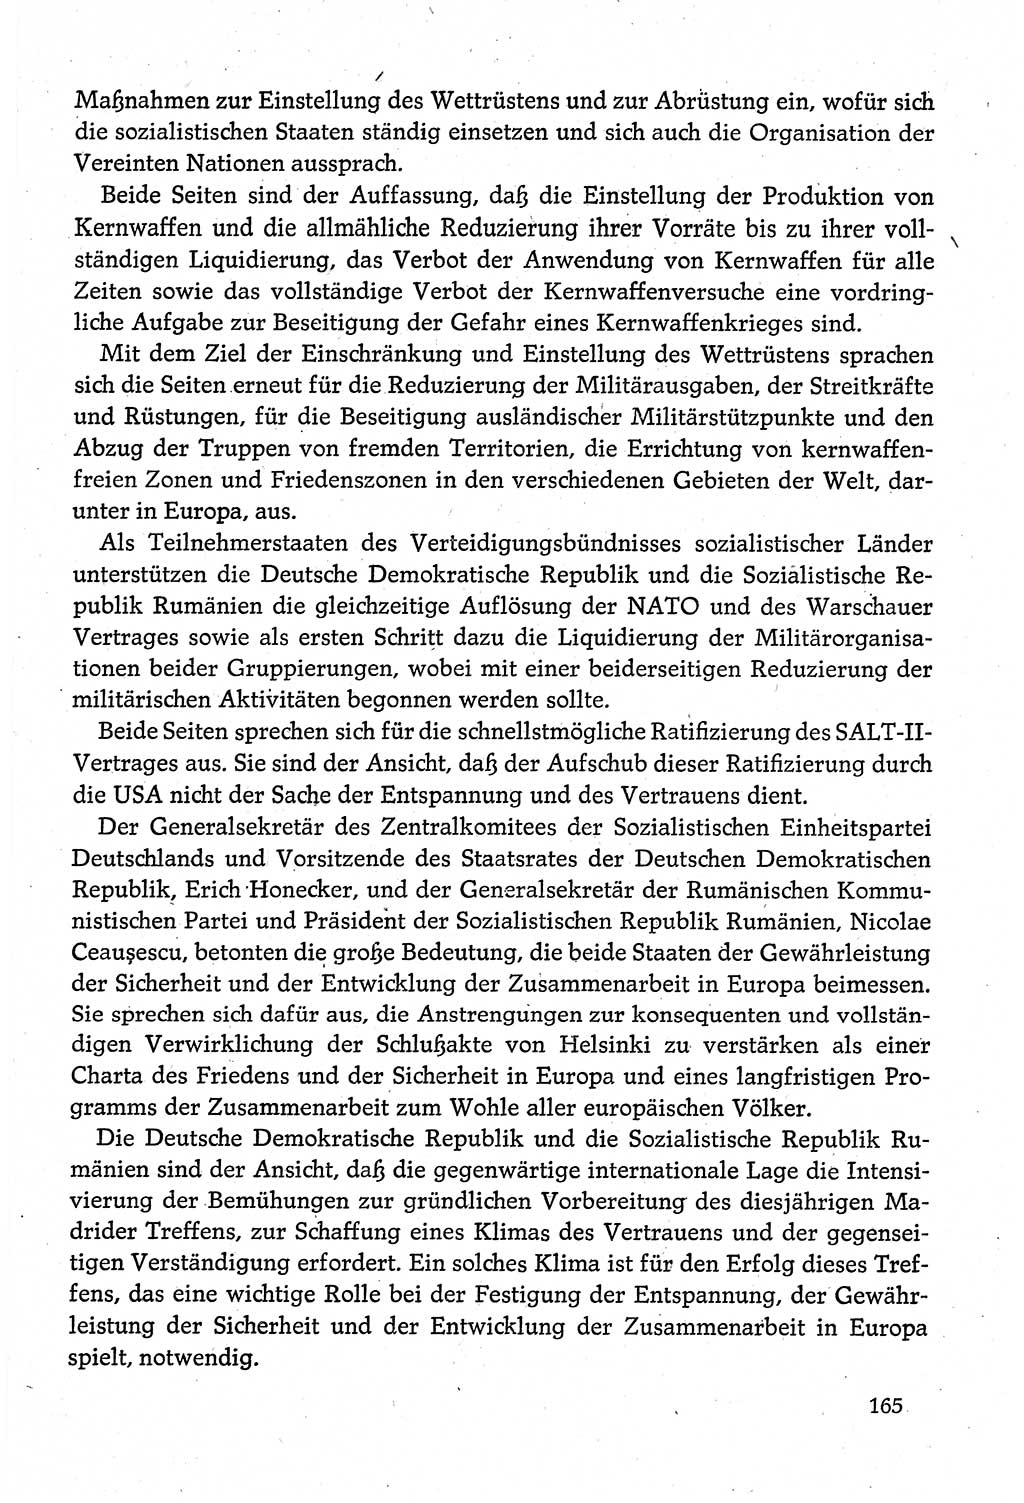 Dokumente der Sozialistischen Einheitspartei Deutschlands (SED) [Deutsche Demokratische Republik (DDR)] 1980-1981, Seite 165 (Dok. SED DDR 1980-1981, S. 165)